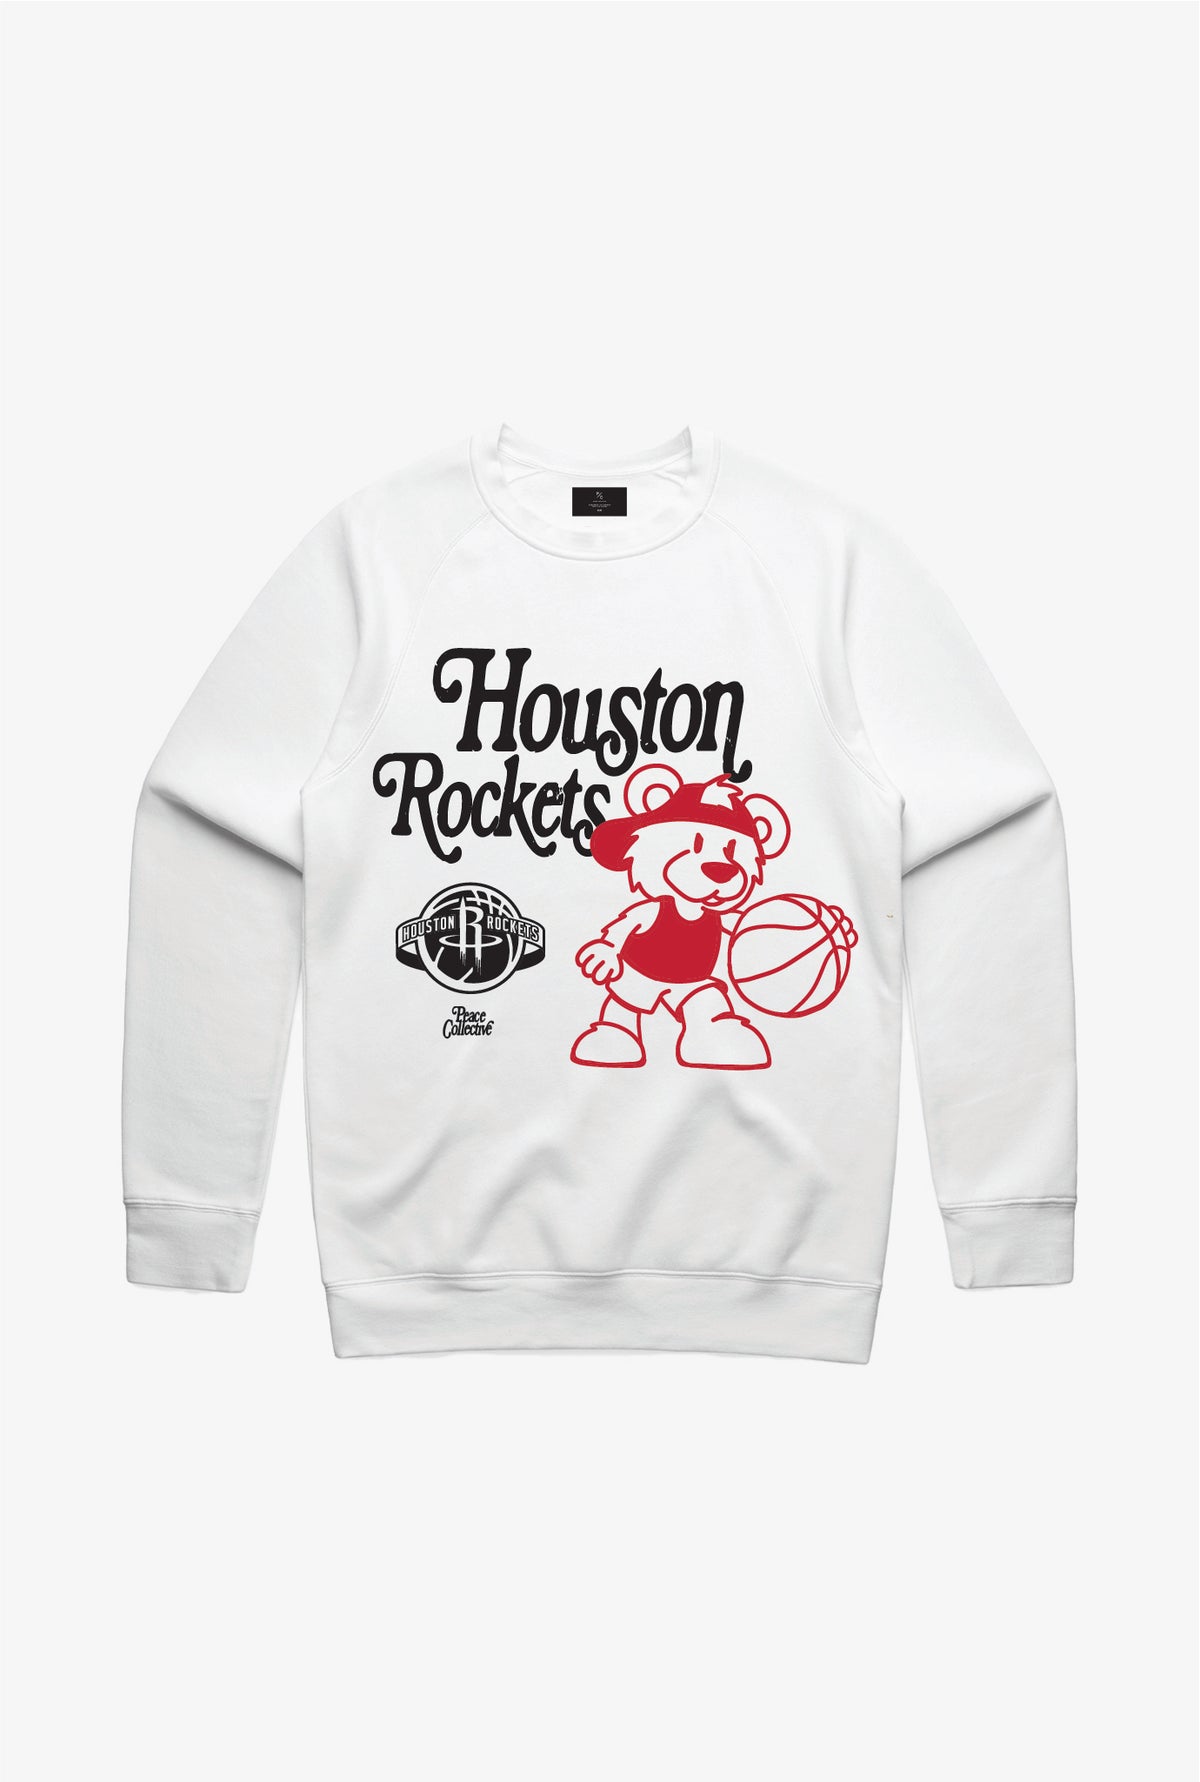 Houston Rockets Mascot Crewneck - White